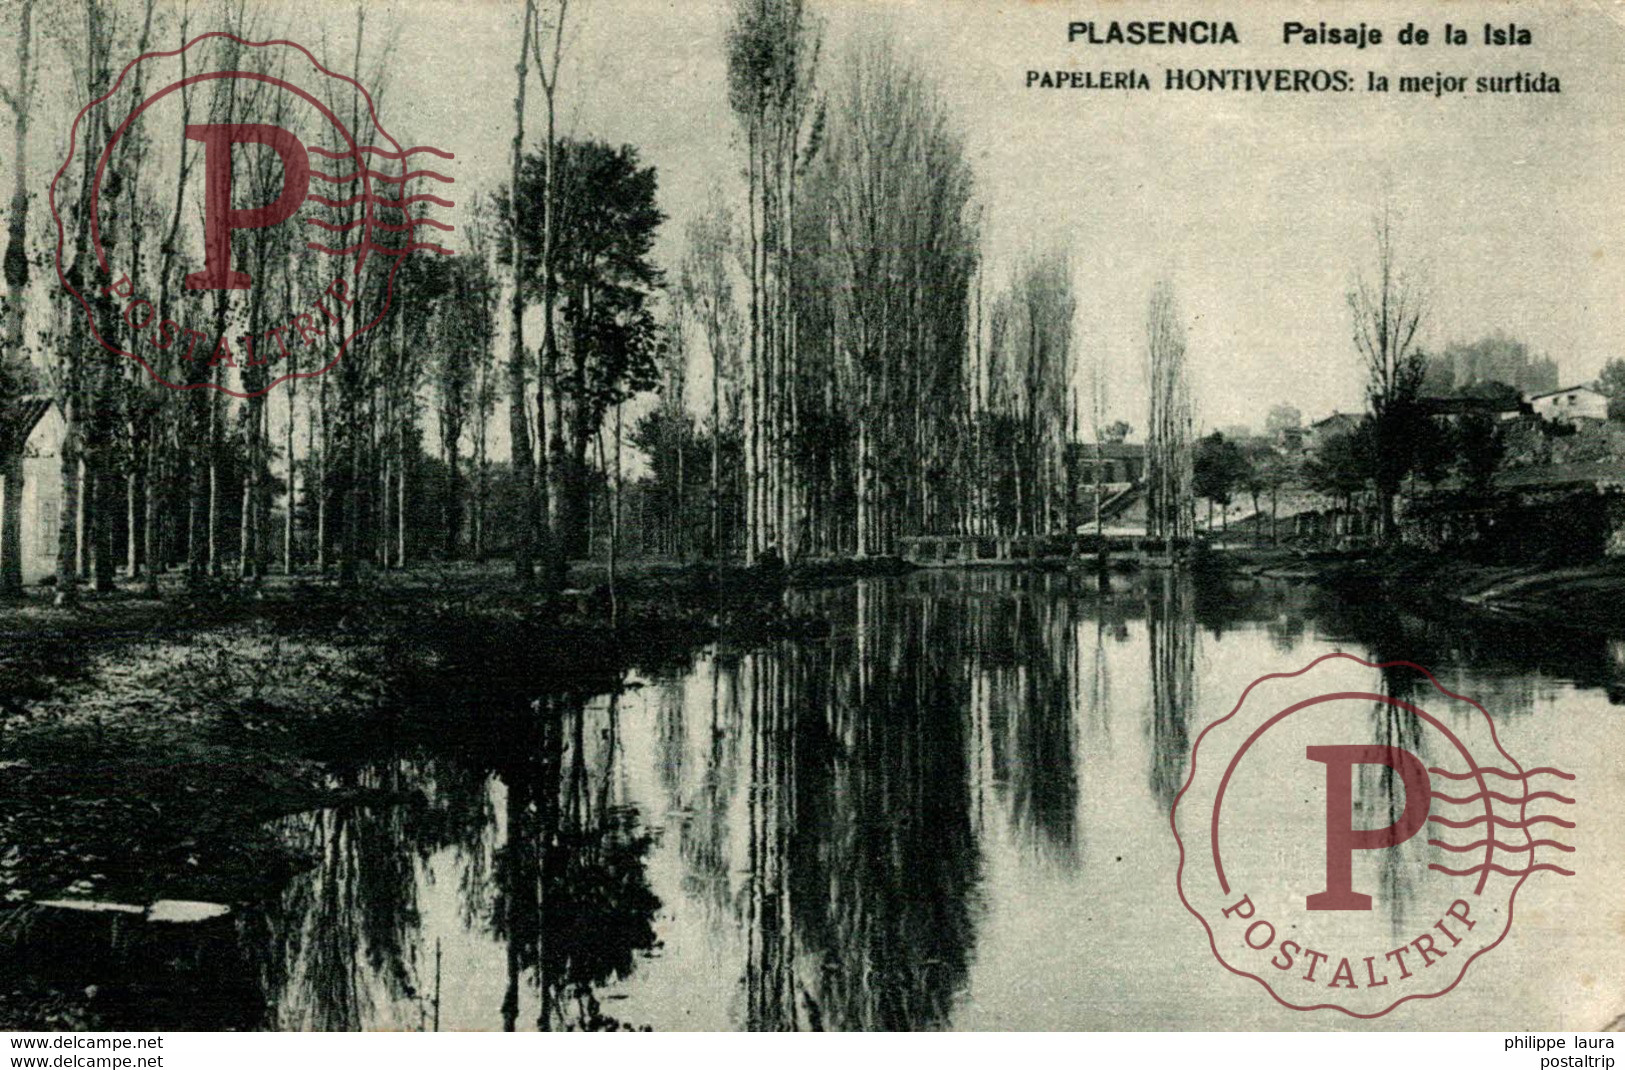 PLASENCIA (CACERES). PAISAJE DE LA ISLA. - PAPELERIA HONTIVEROS - Cáceres